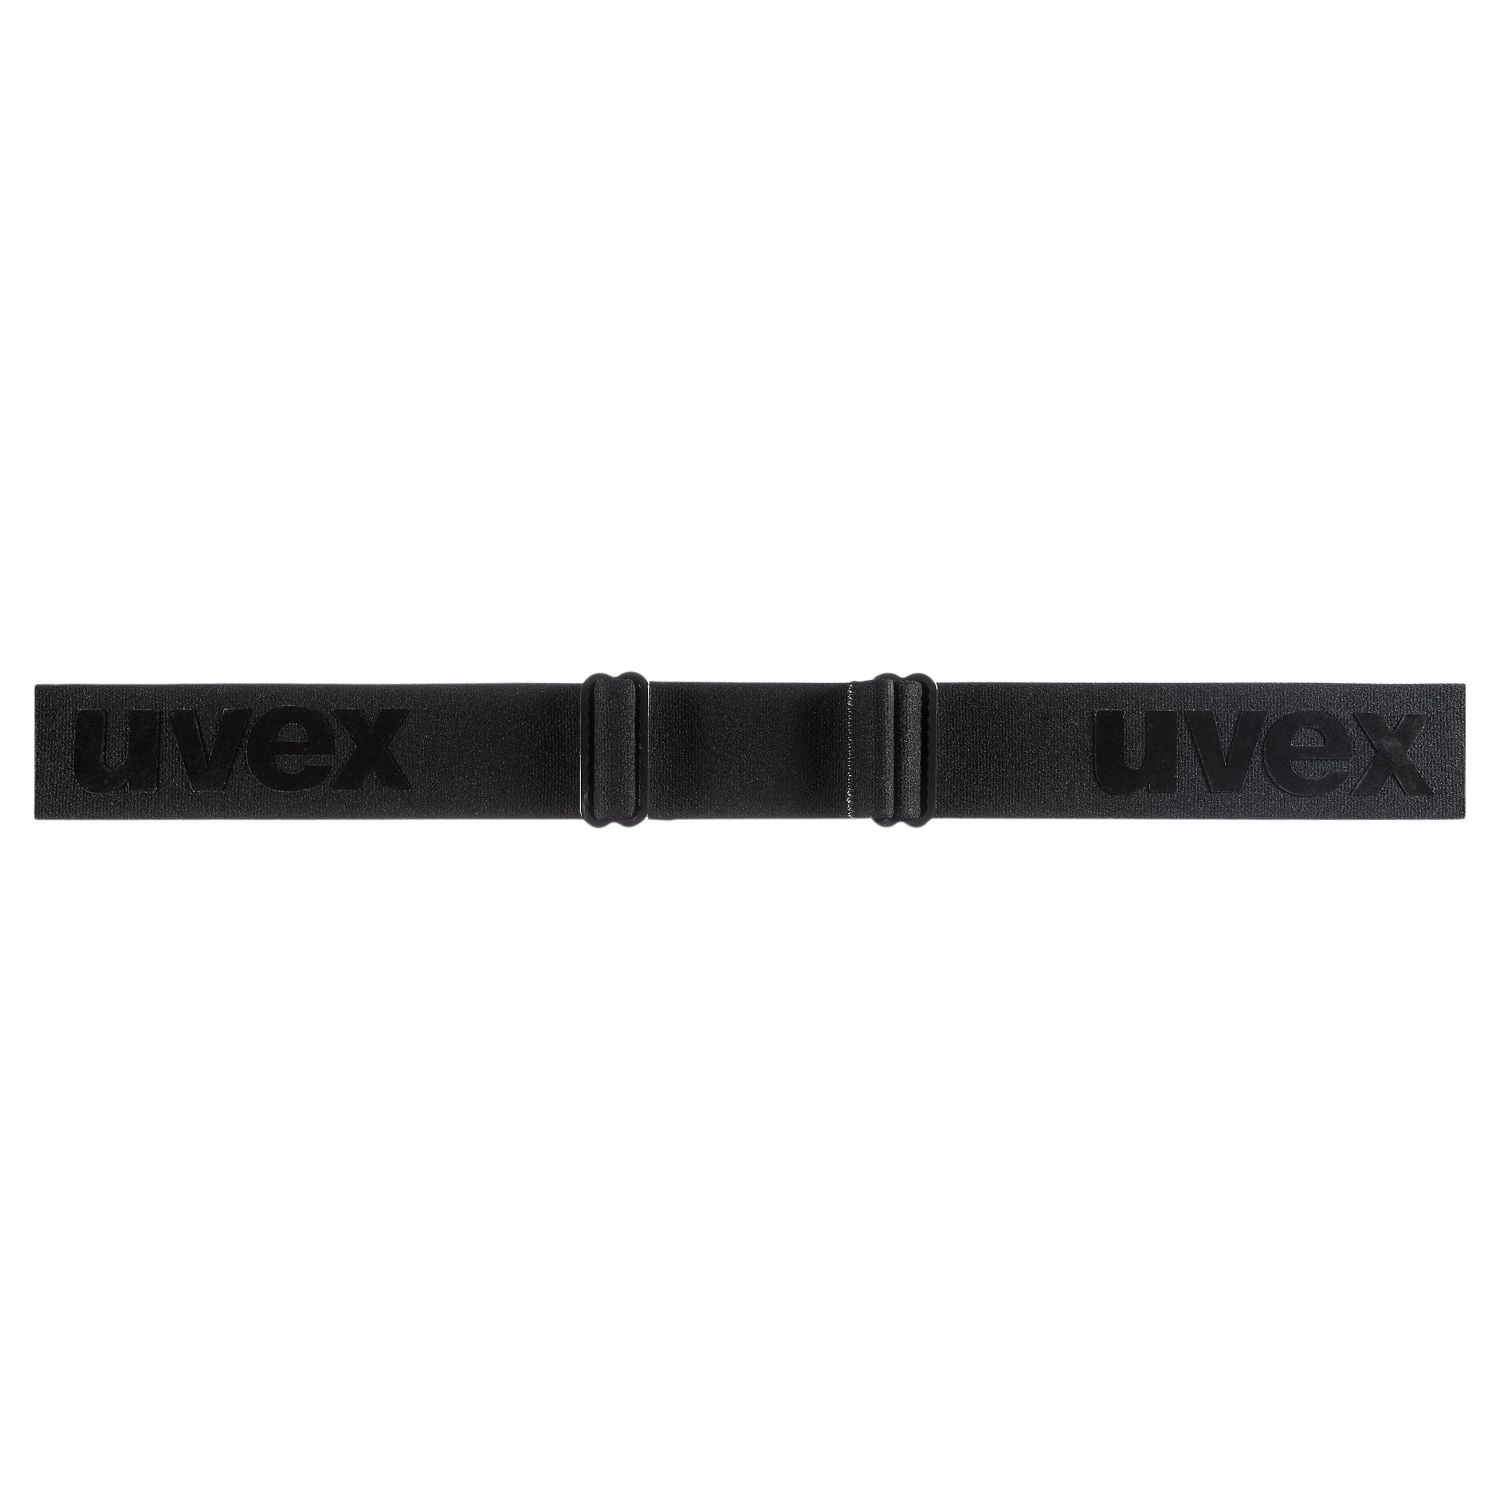 Uvex g.gl. 3000 CV, hiihtolasit, musta